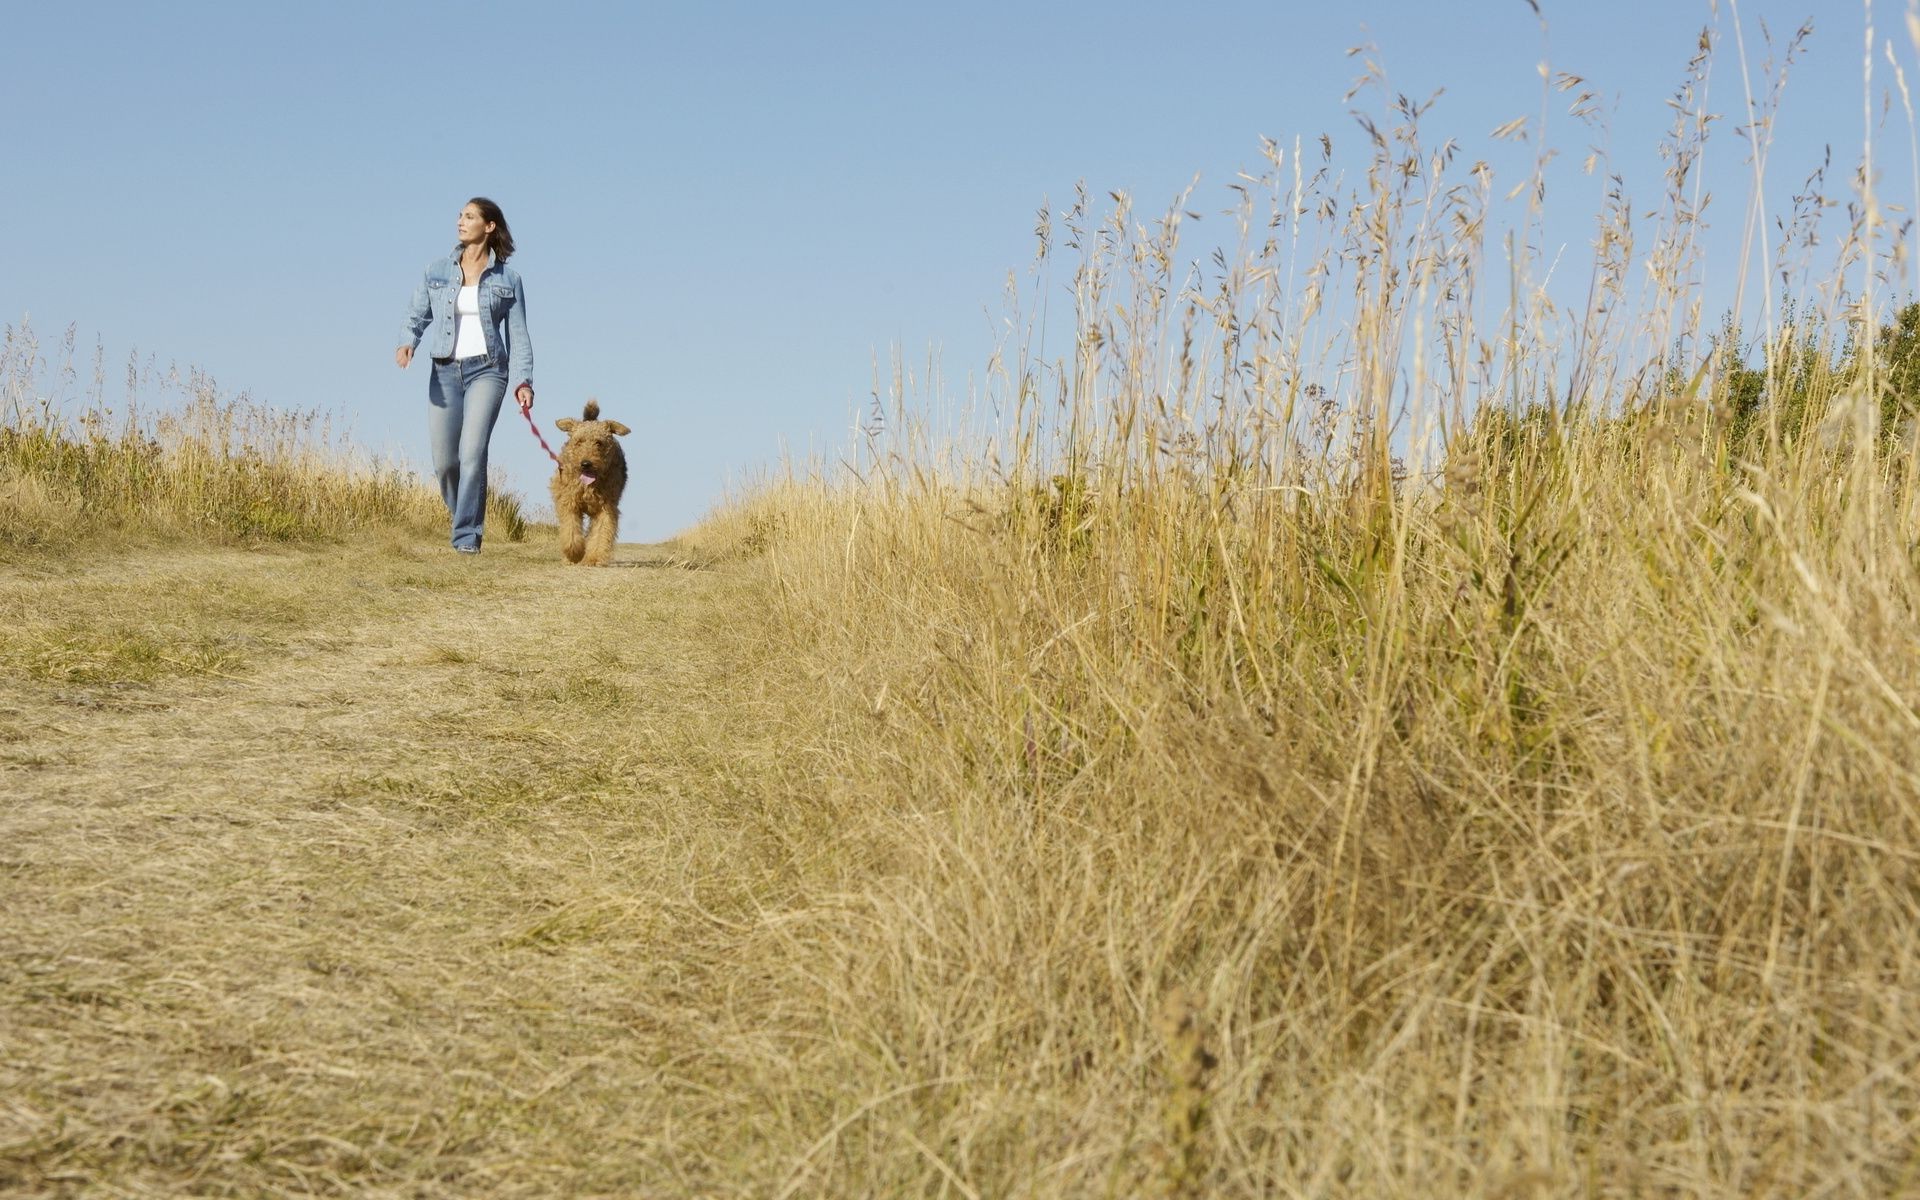 Собаки и люди на дороге. Человек с собакой на природе. Фотосессия с собакой в поле. Прогулка с собакой на природе. Девушка с собакой в поле.